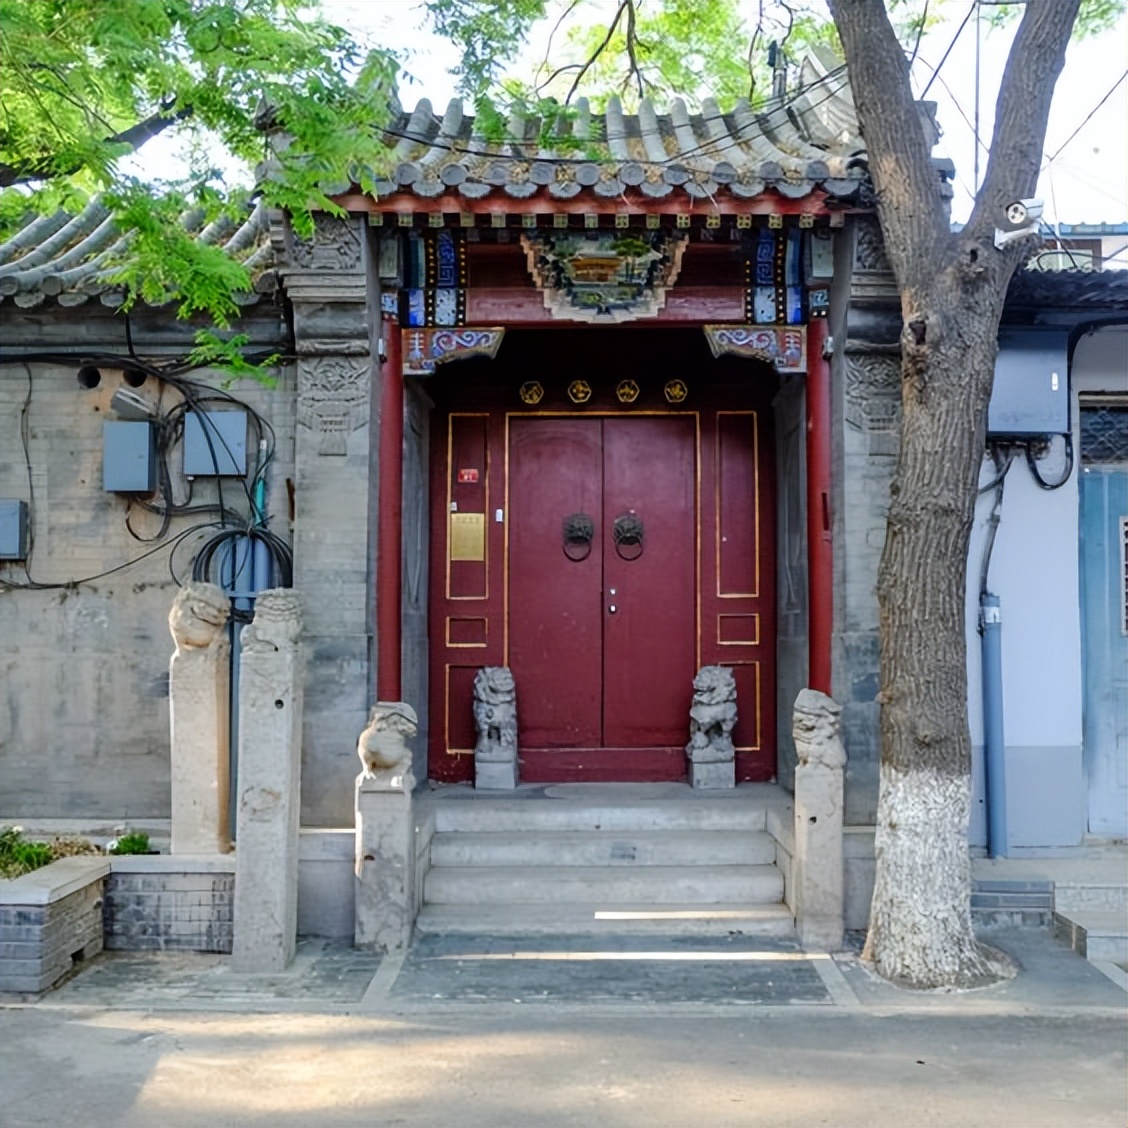 3种常见的中式庭院门,做法用处各不同,千万别混淆乱用